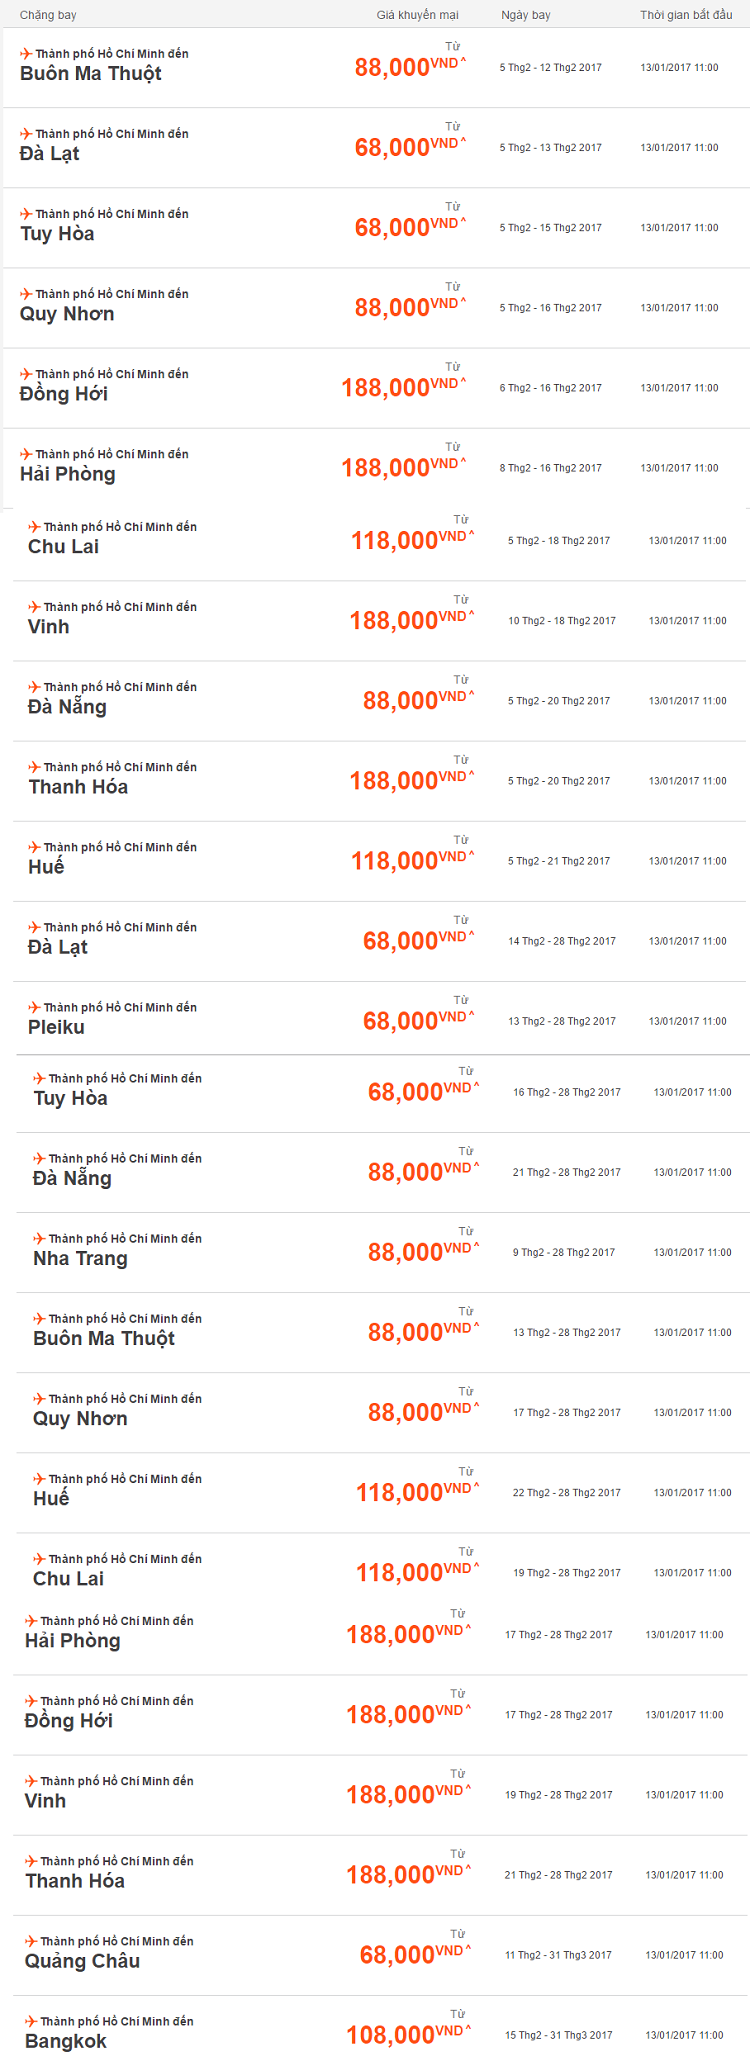  Giá vé khuyến mại cho các chặng bay từ Tp. Hồ Chí Minh